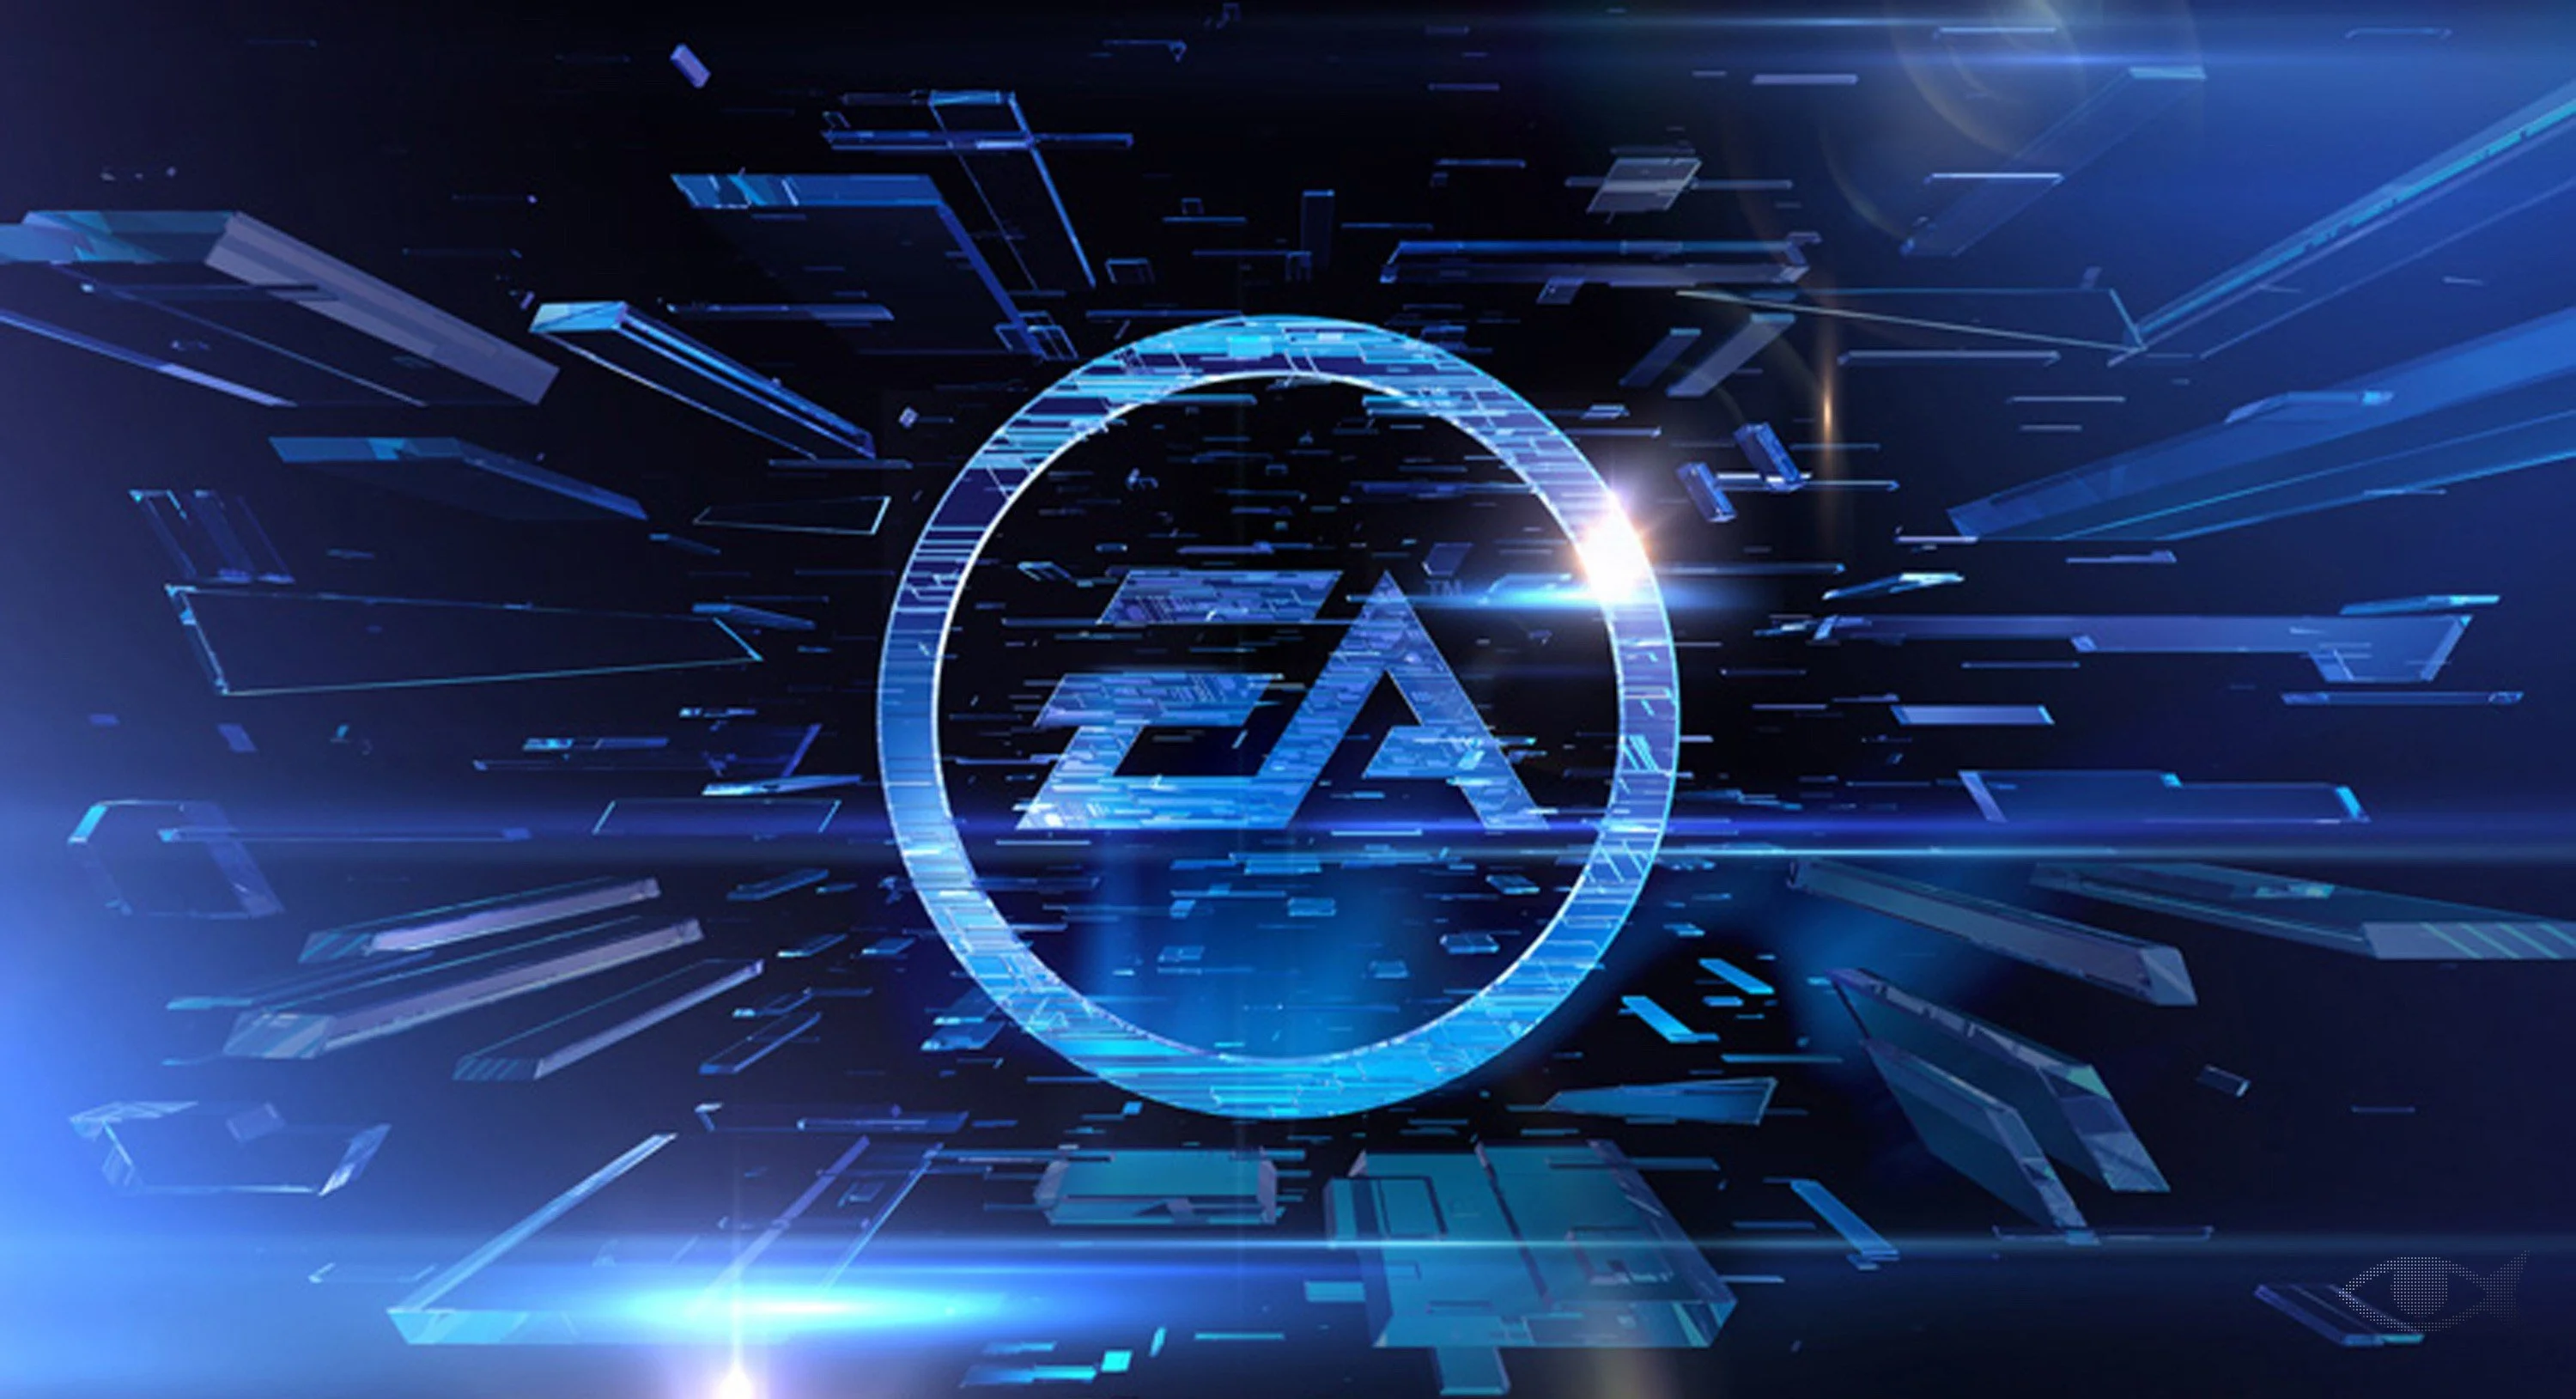 9 июня 2014 года Electronic Arts провела пресс-конференцию на E3 2014. «Канобу» делится впечатлениями о самых важных играх из показанных.